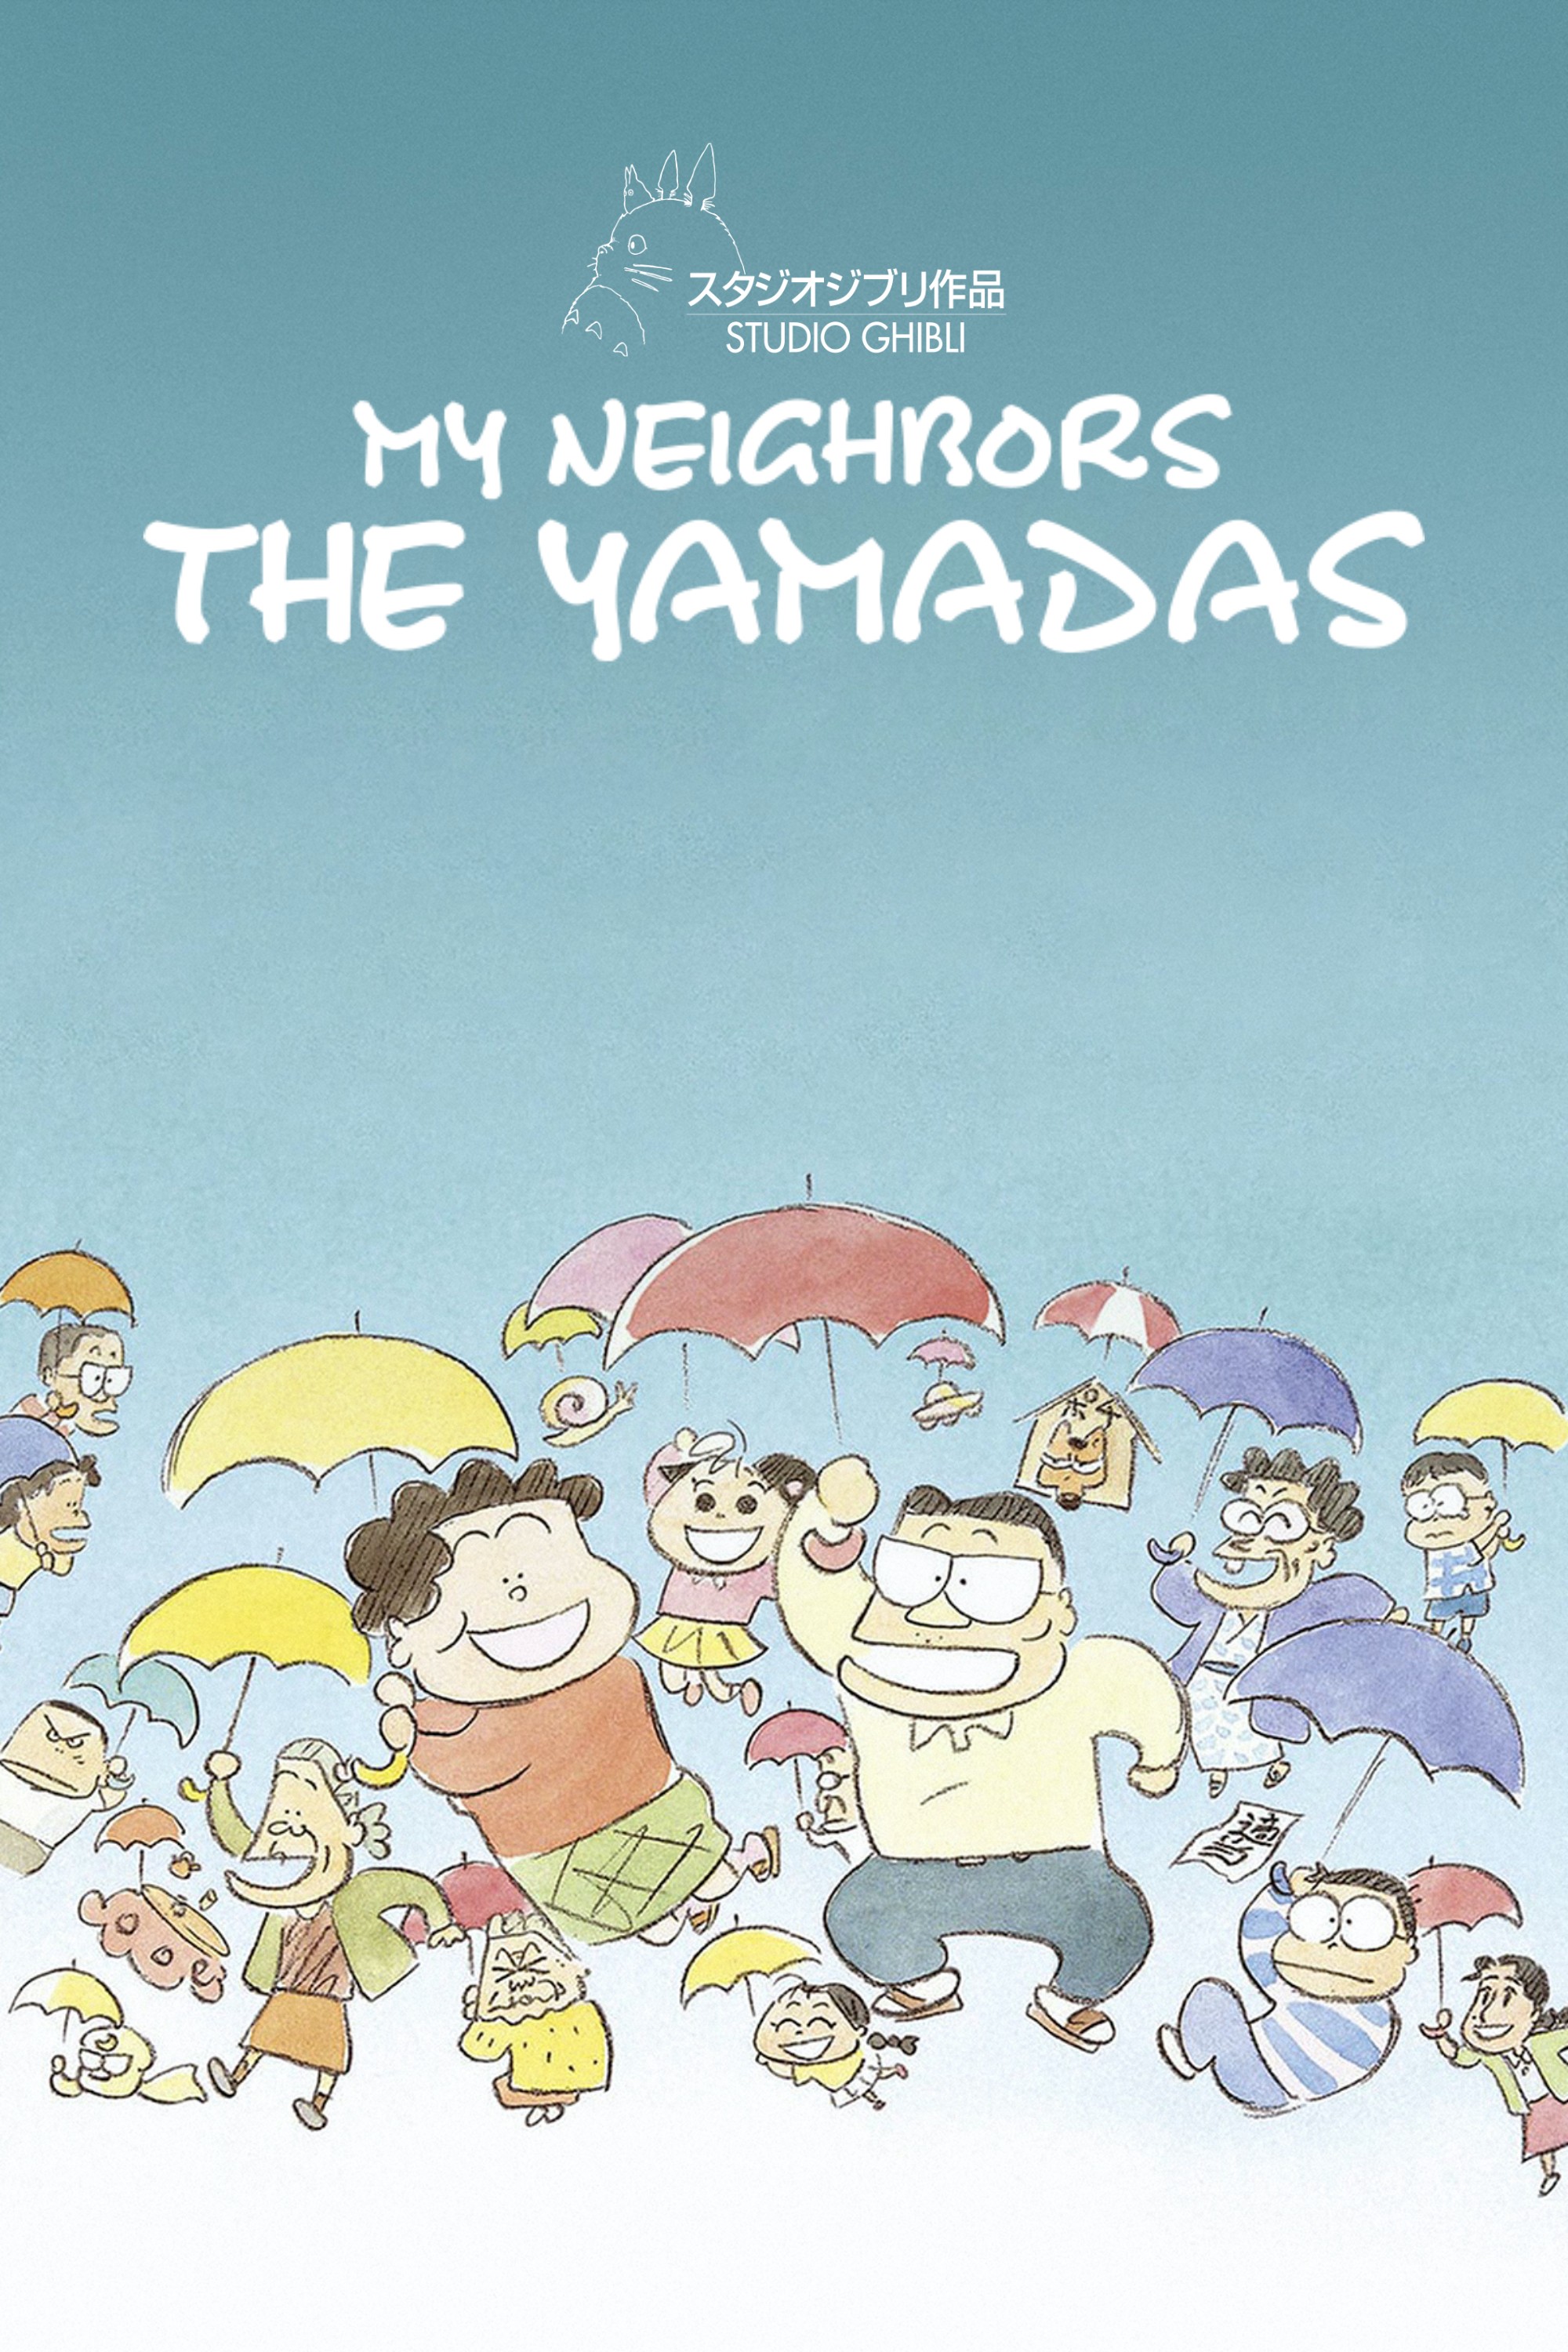 Gia đình nhà Yamada - My Neighbors the Yamadas (1999)